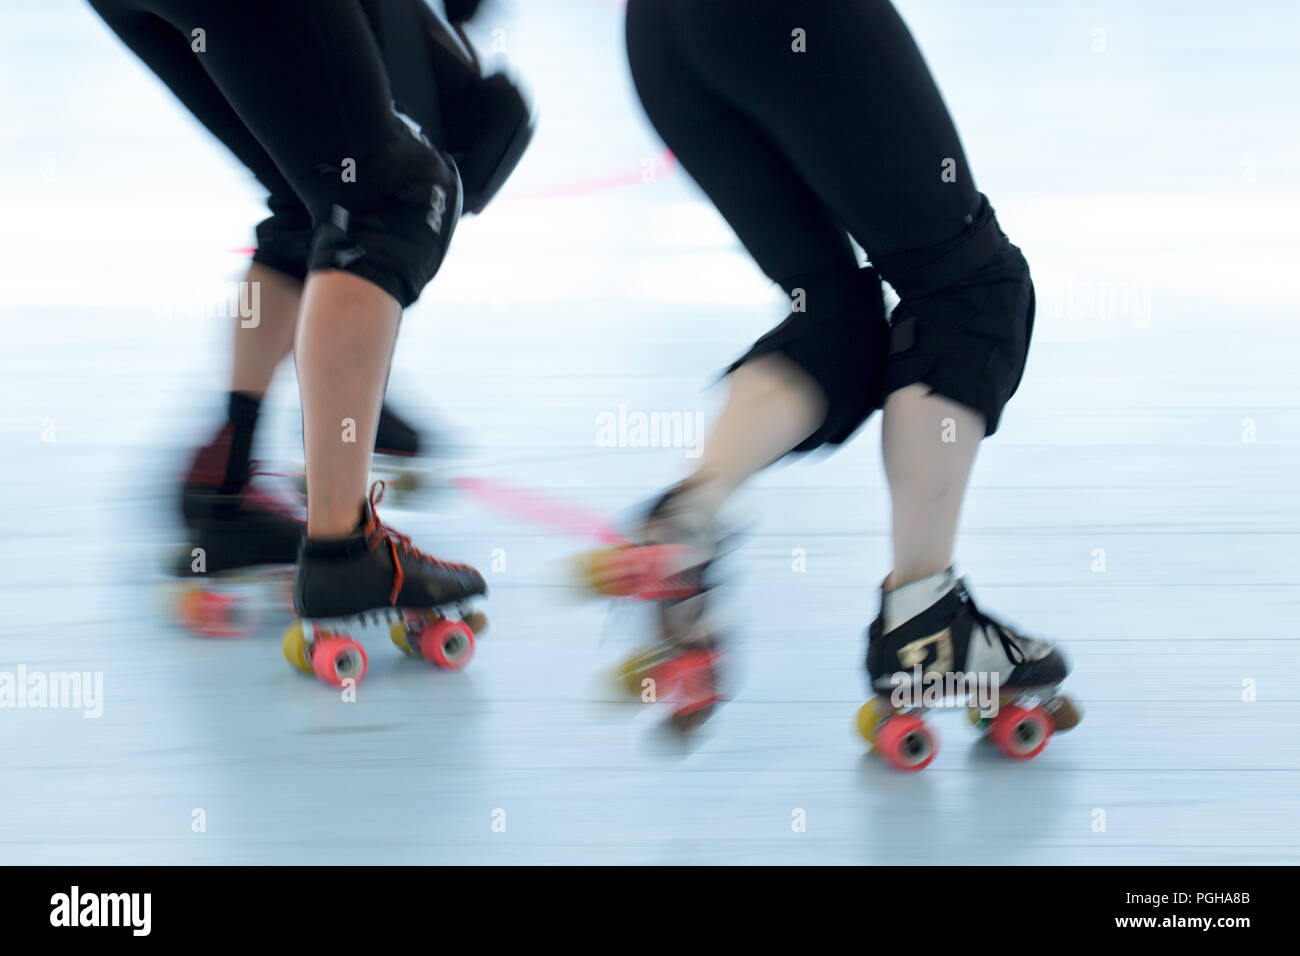 Roller derby patinadores de cerca. Acción paneo de desenfoque de movimiento de las piernas y los pies. Foto de stock